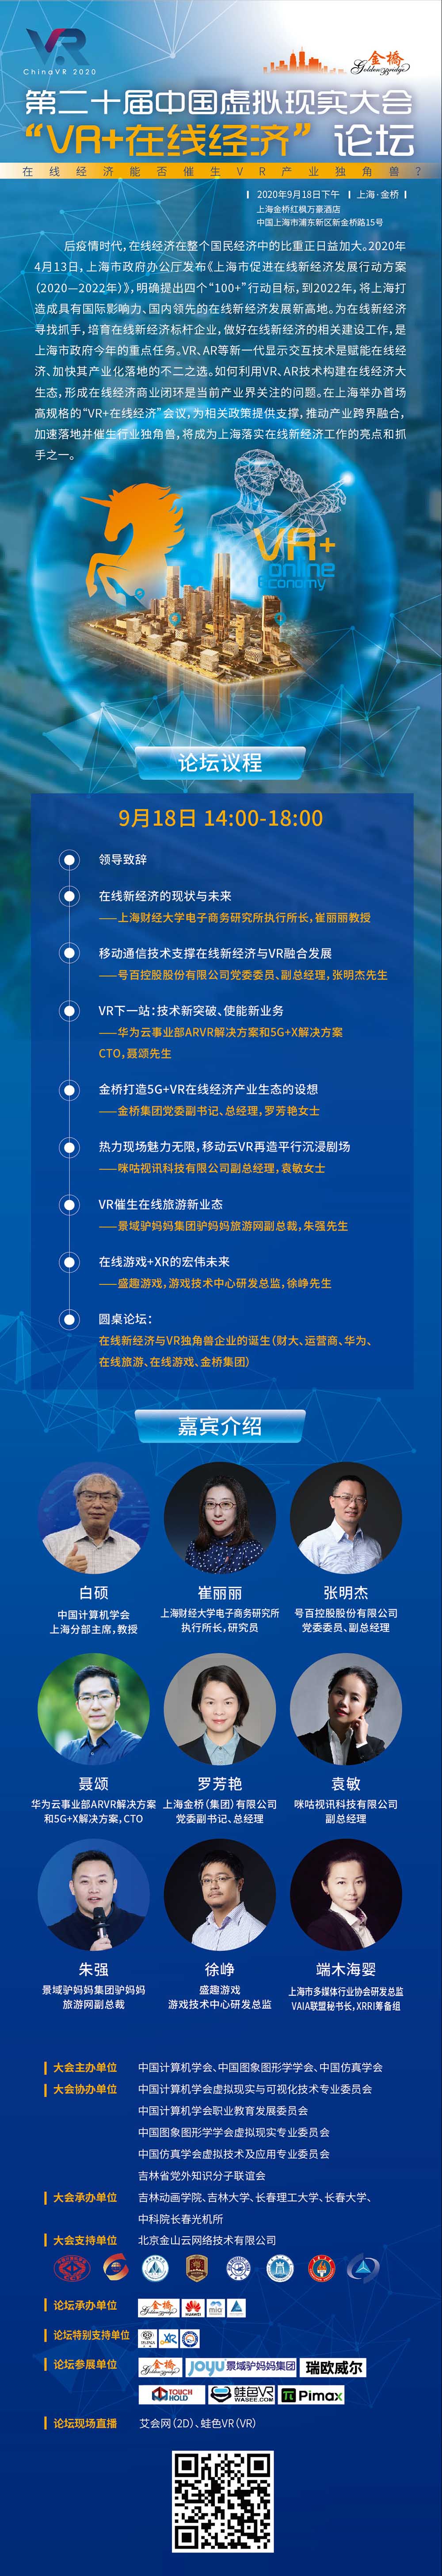 在线经济能否催生vr独角兽 第二十届中国虚拟现实大会 Vr 在线经济 论坛下周将在沪召开 Vr陀螺